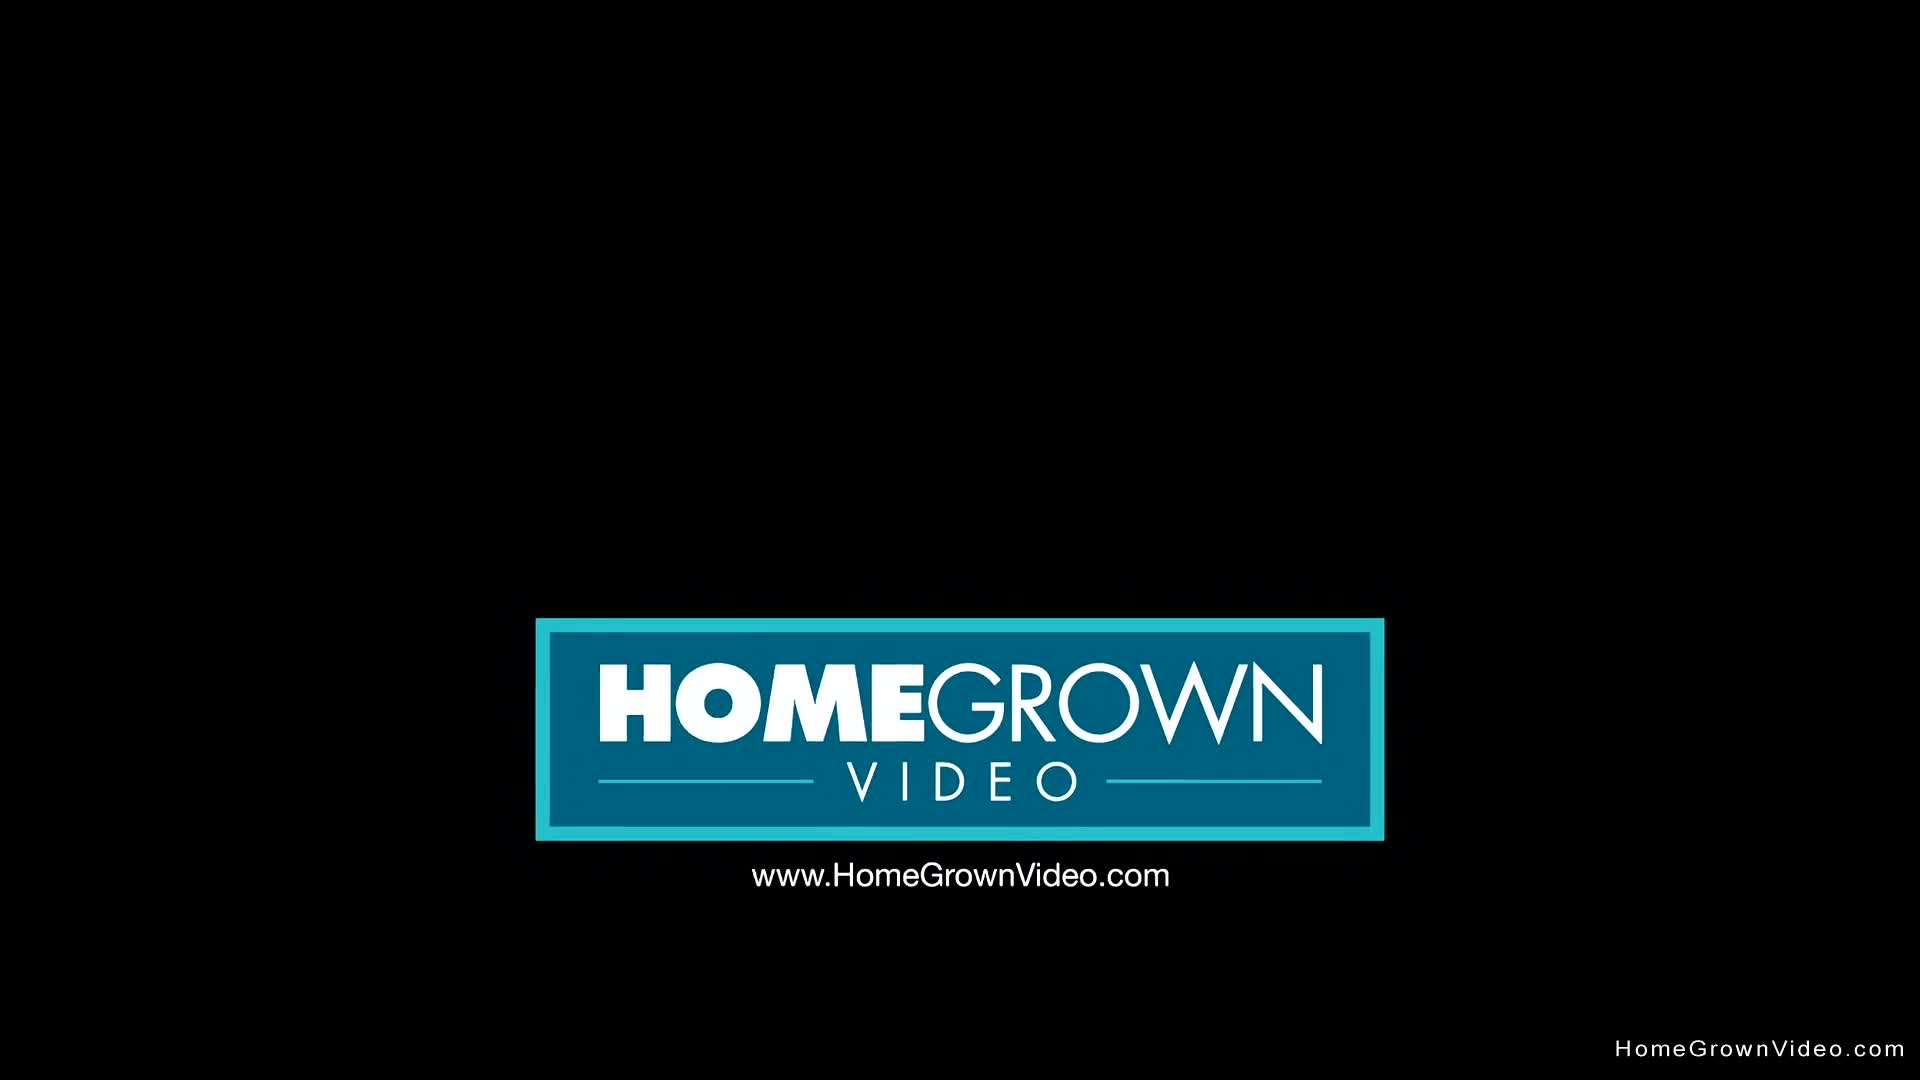 Homegrown videos.com